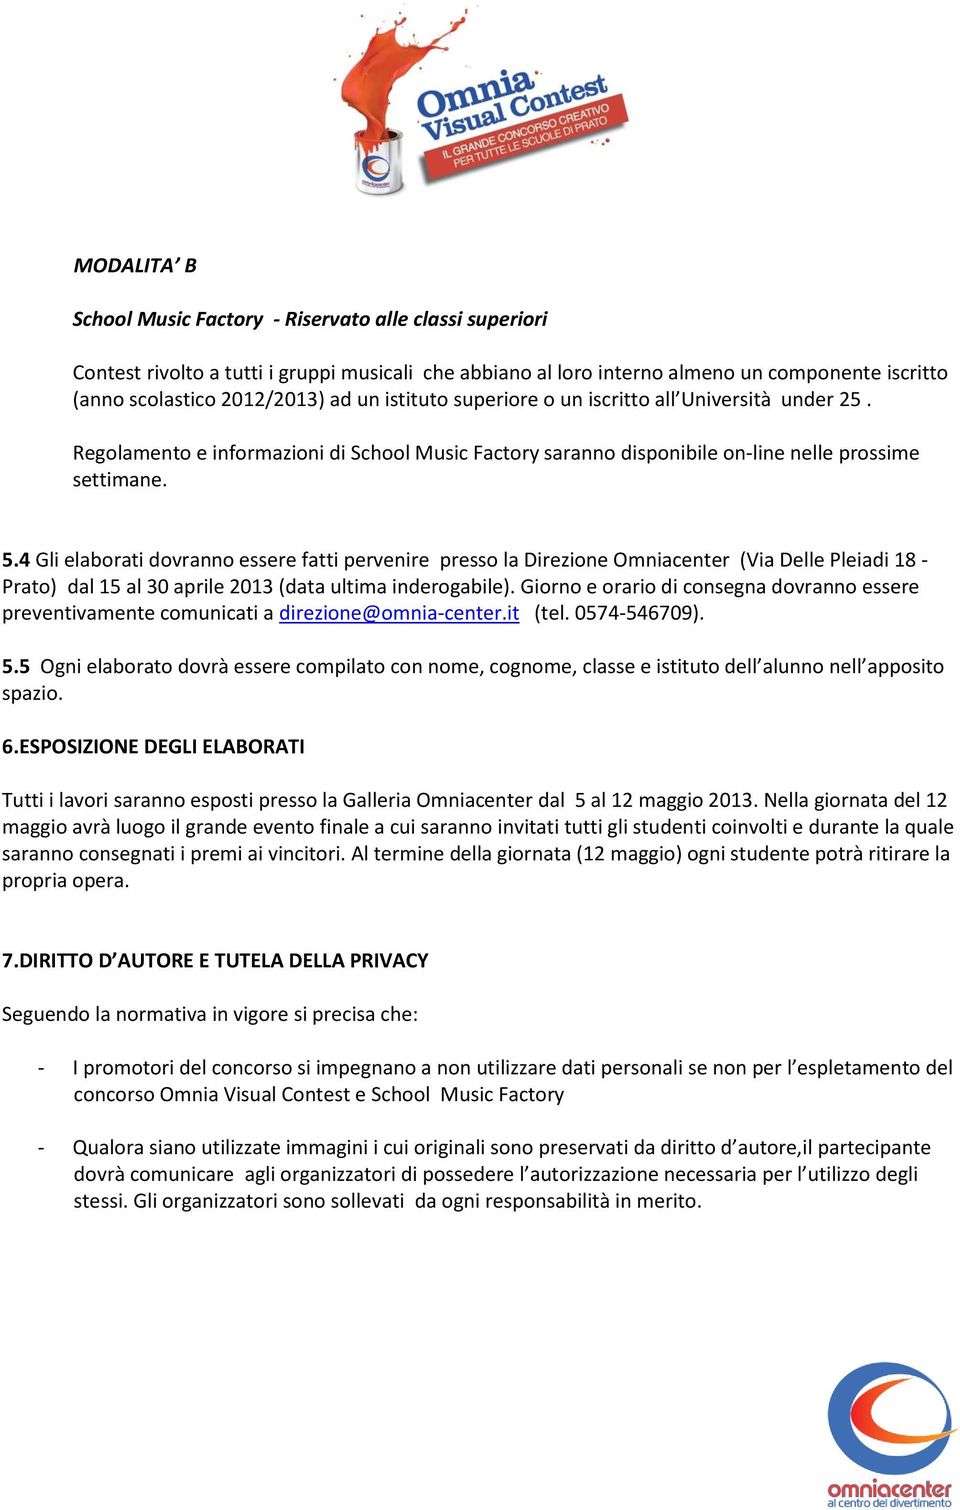 4 Gli elaborati dovranno essere fatti pervenire presso la Direzione Omniacenter (Via Delle Pleiadi 18 - Prato) dal 15 al 30 aprile 2013 (data ultima inderogabile).